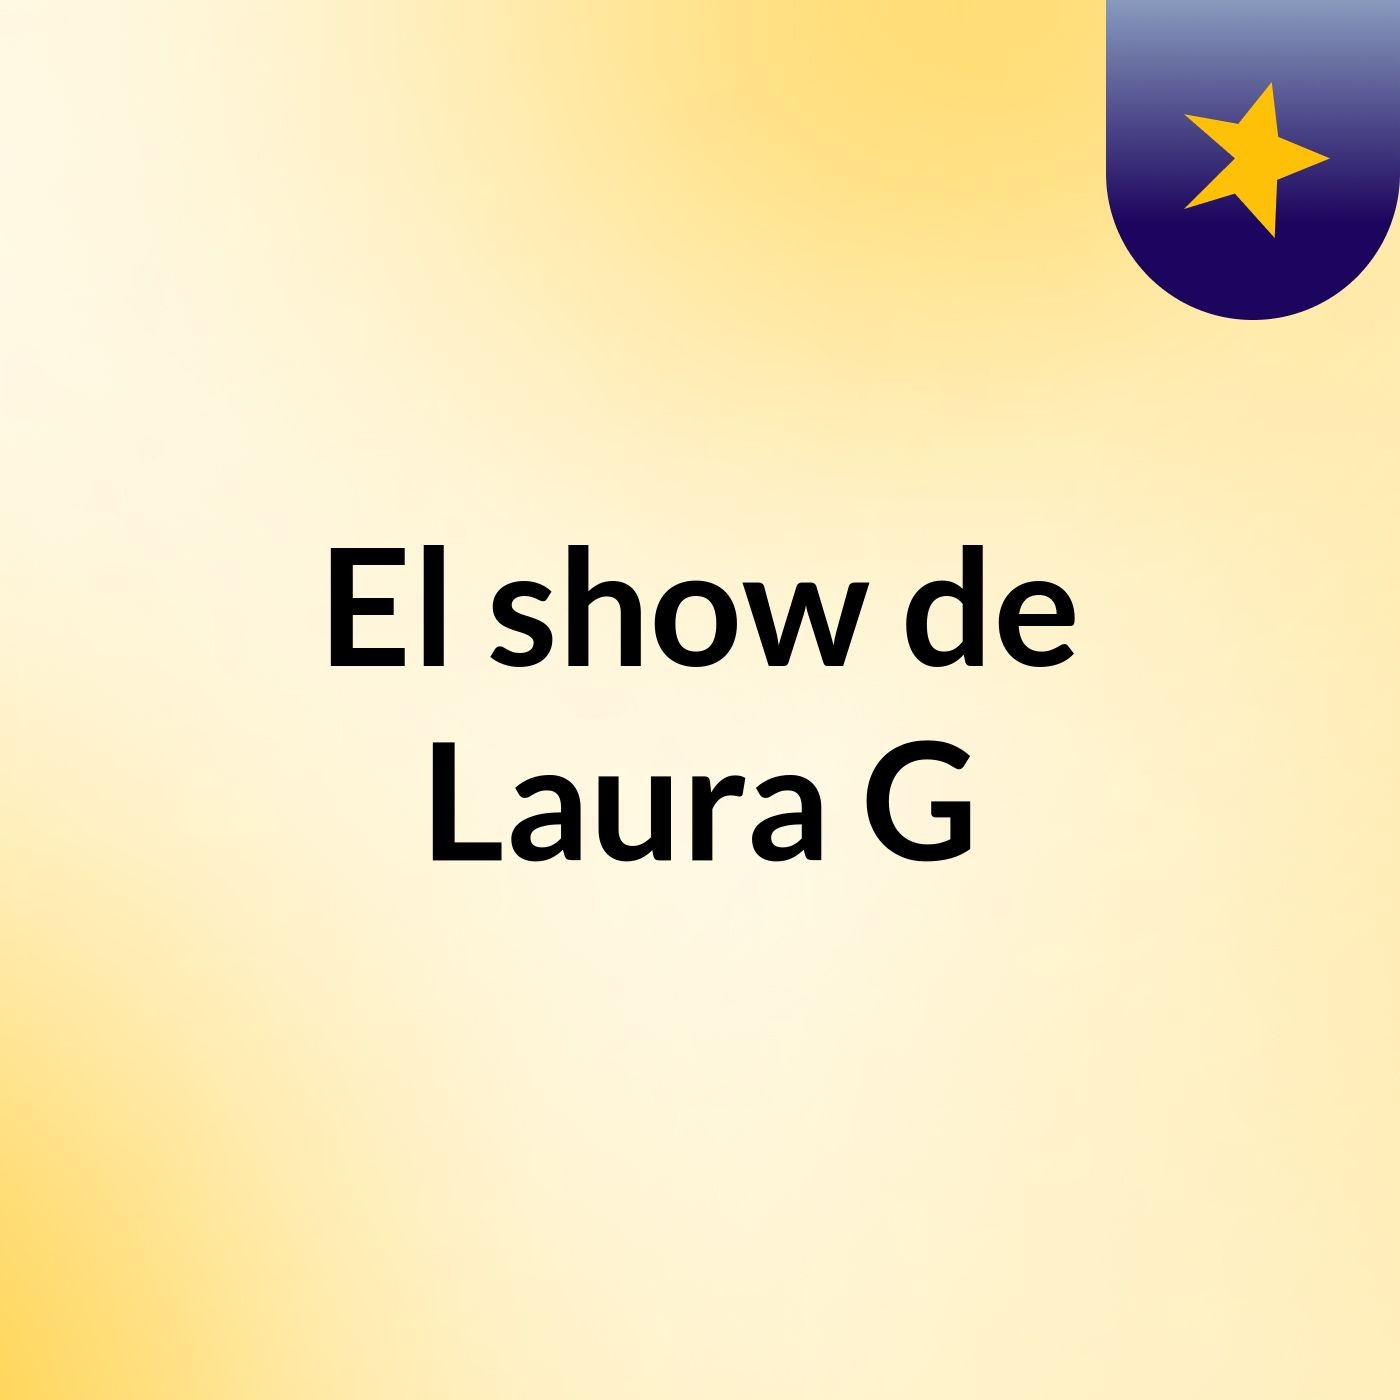 Episodio 6 - El show de Laura G